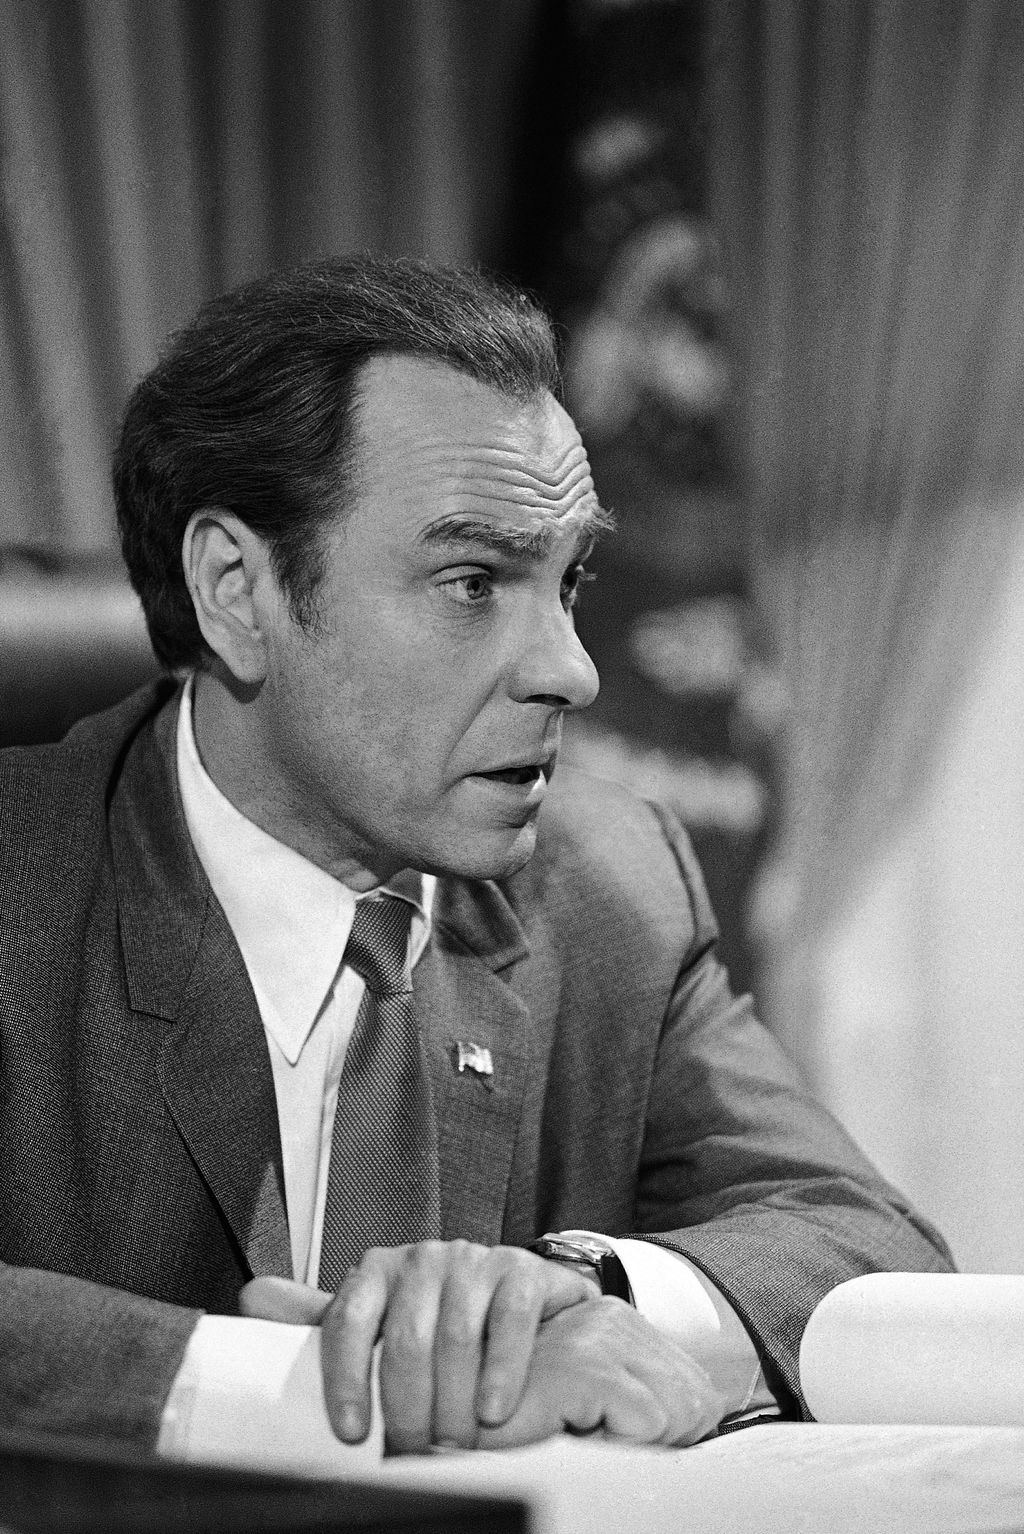 NIXON, Richard Los Angeles, 2019. július 10.
1978. december 8-án a Blind Ambition című film forgatásán készített kép a Richard Nixon egykori amerikai elnököt játszó Rip Torn amerikai színészről, aki 2019. július 9-én, 88 éves korában elhunyt.
MTI/AP/Doug 